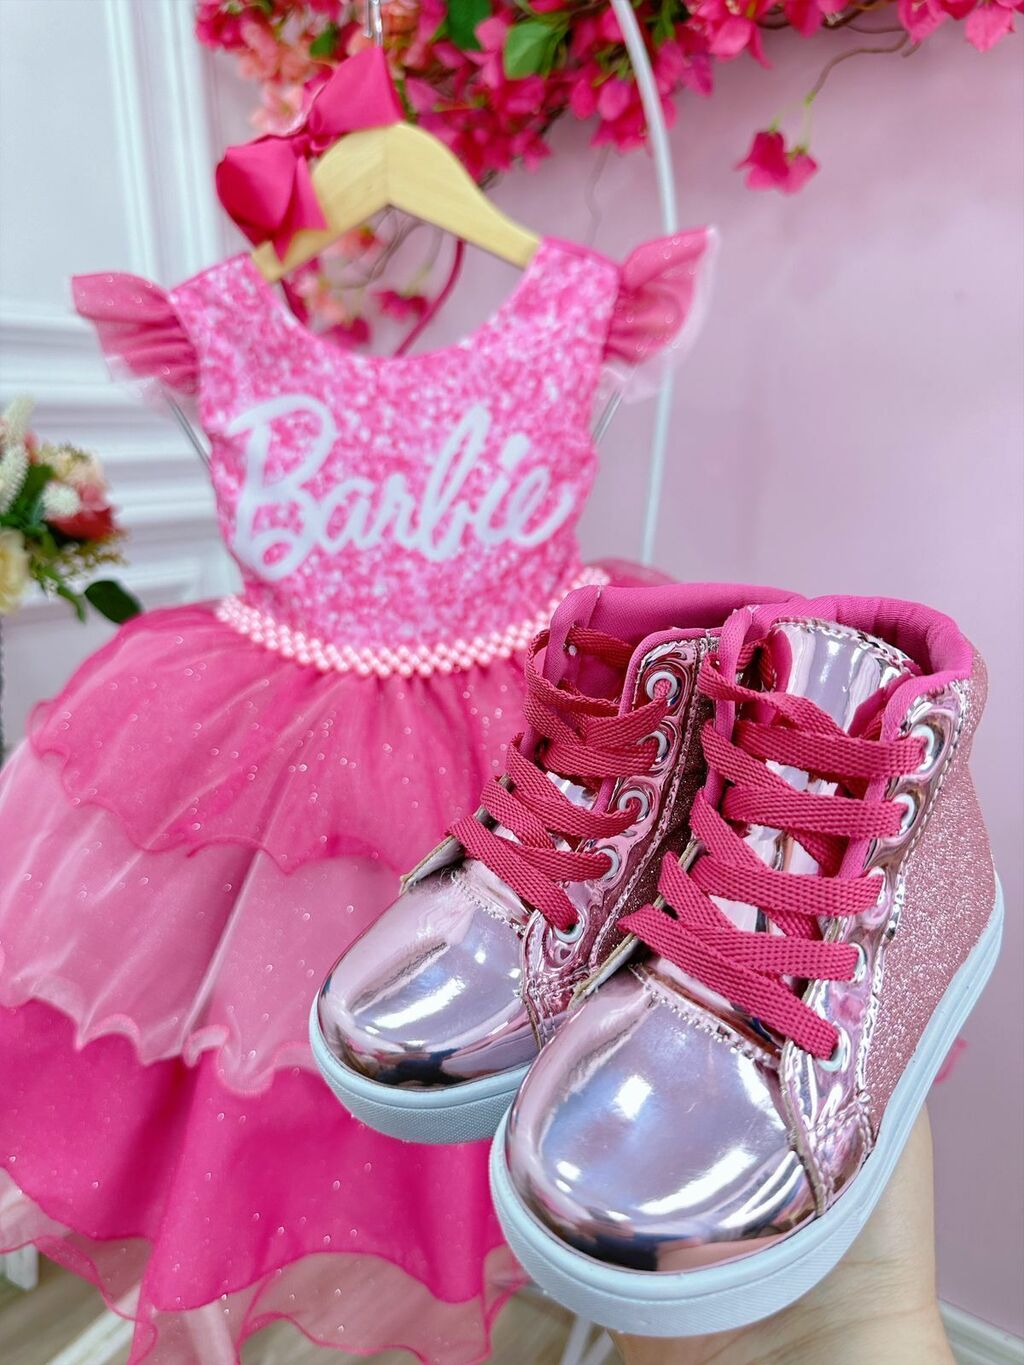 Vestido Infantil Barbie Luxo Festa Rosa Pink